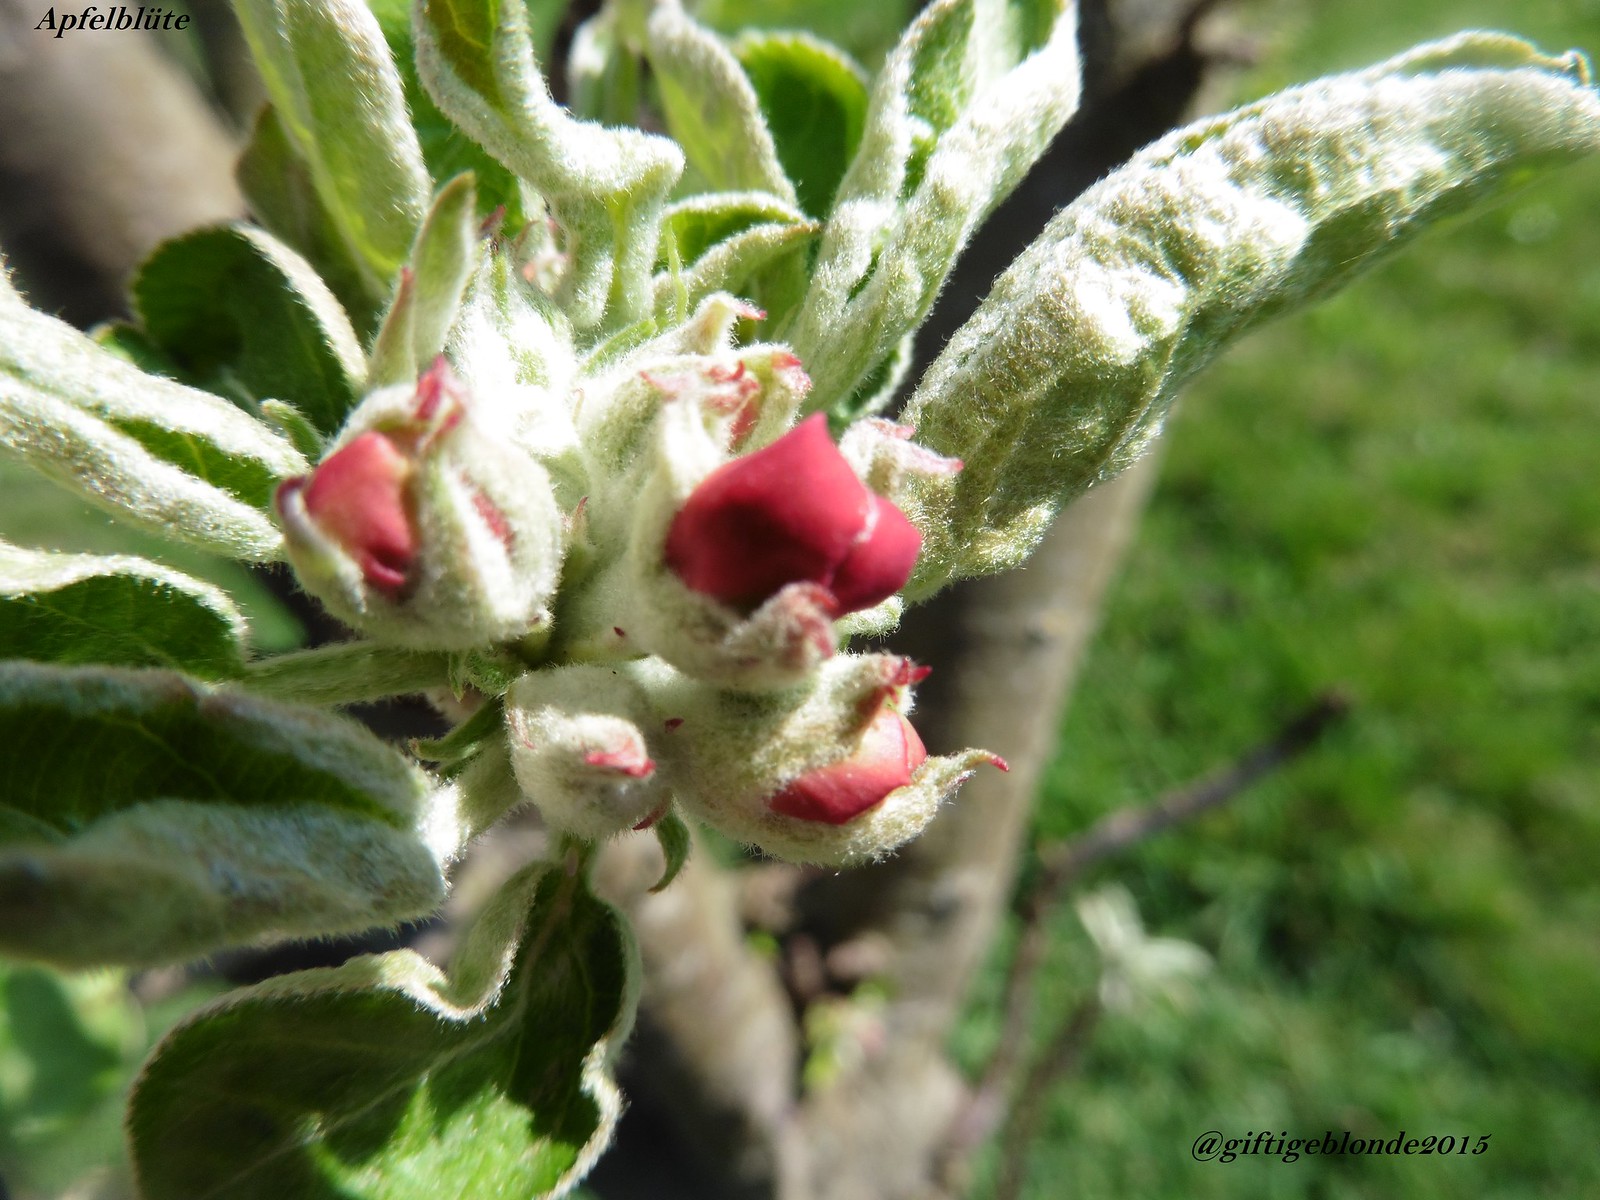 Apfelbüte, Baum 1, April 2014